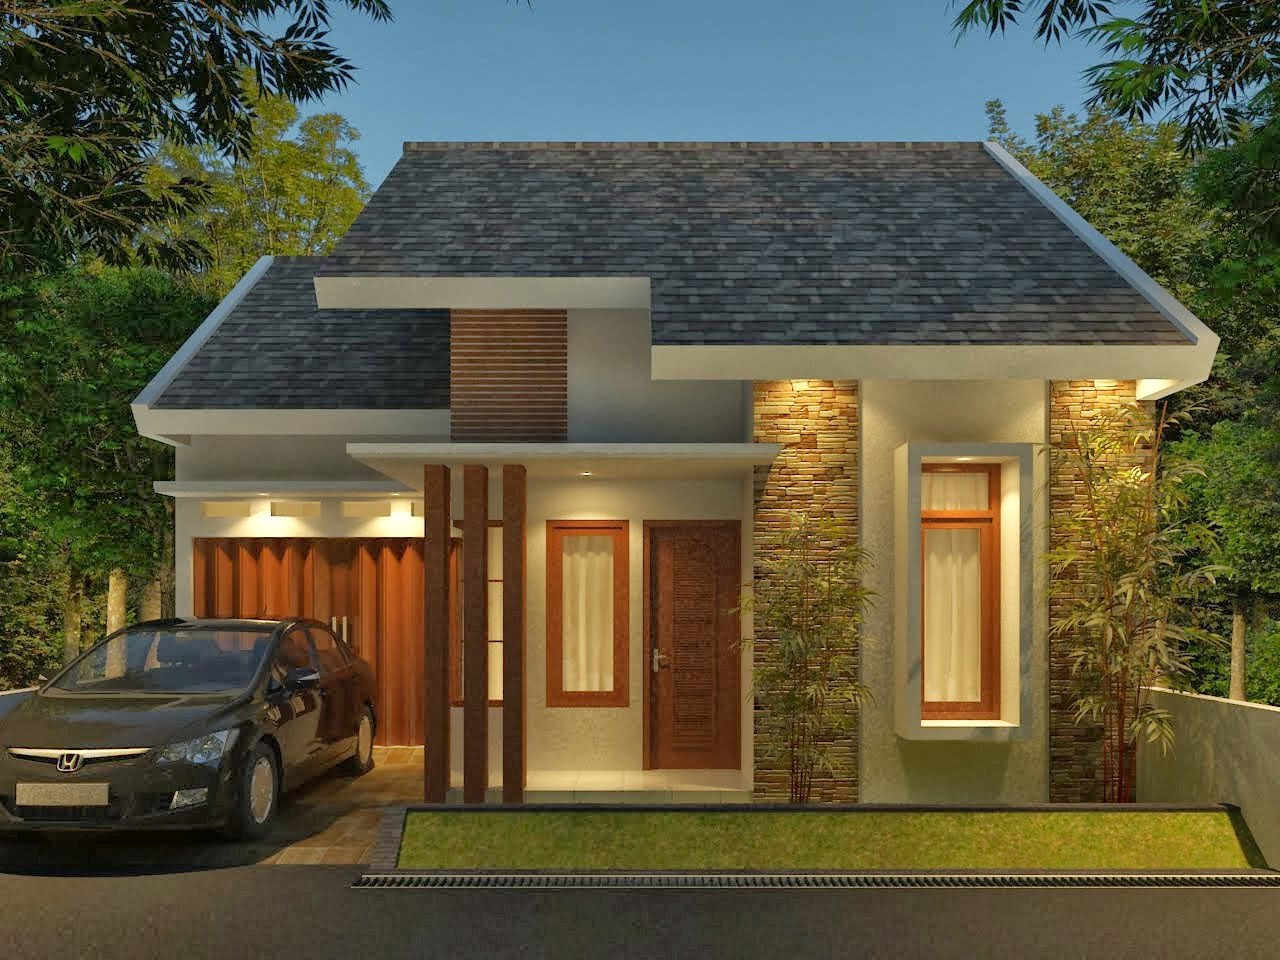 5100 Desain Rumah Minimalis Dengan Biaya 50 Juta 2019 Terbaru